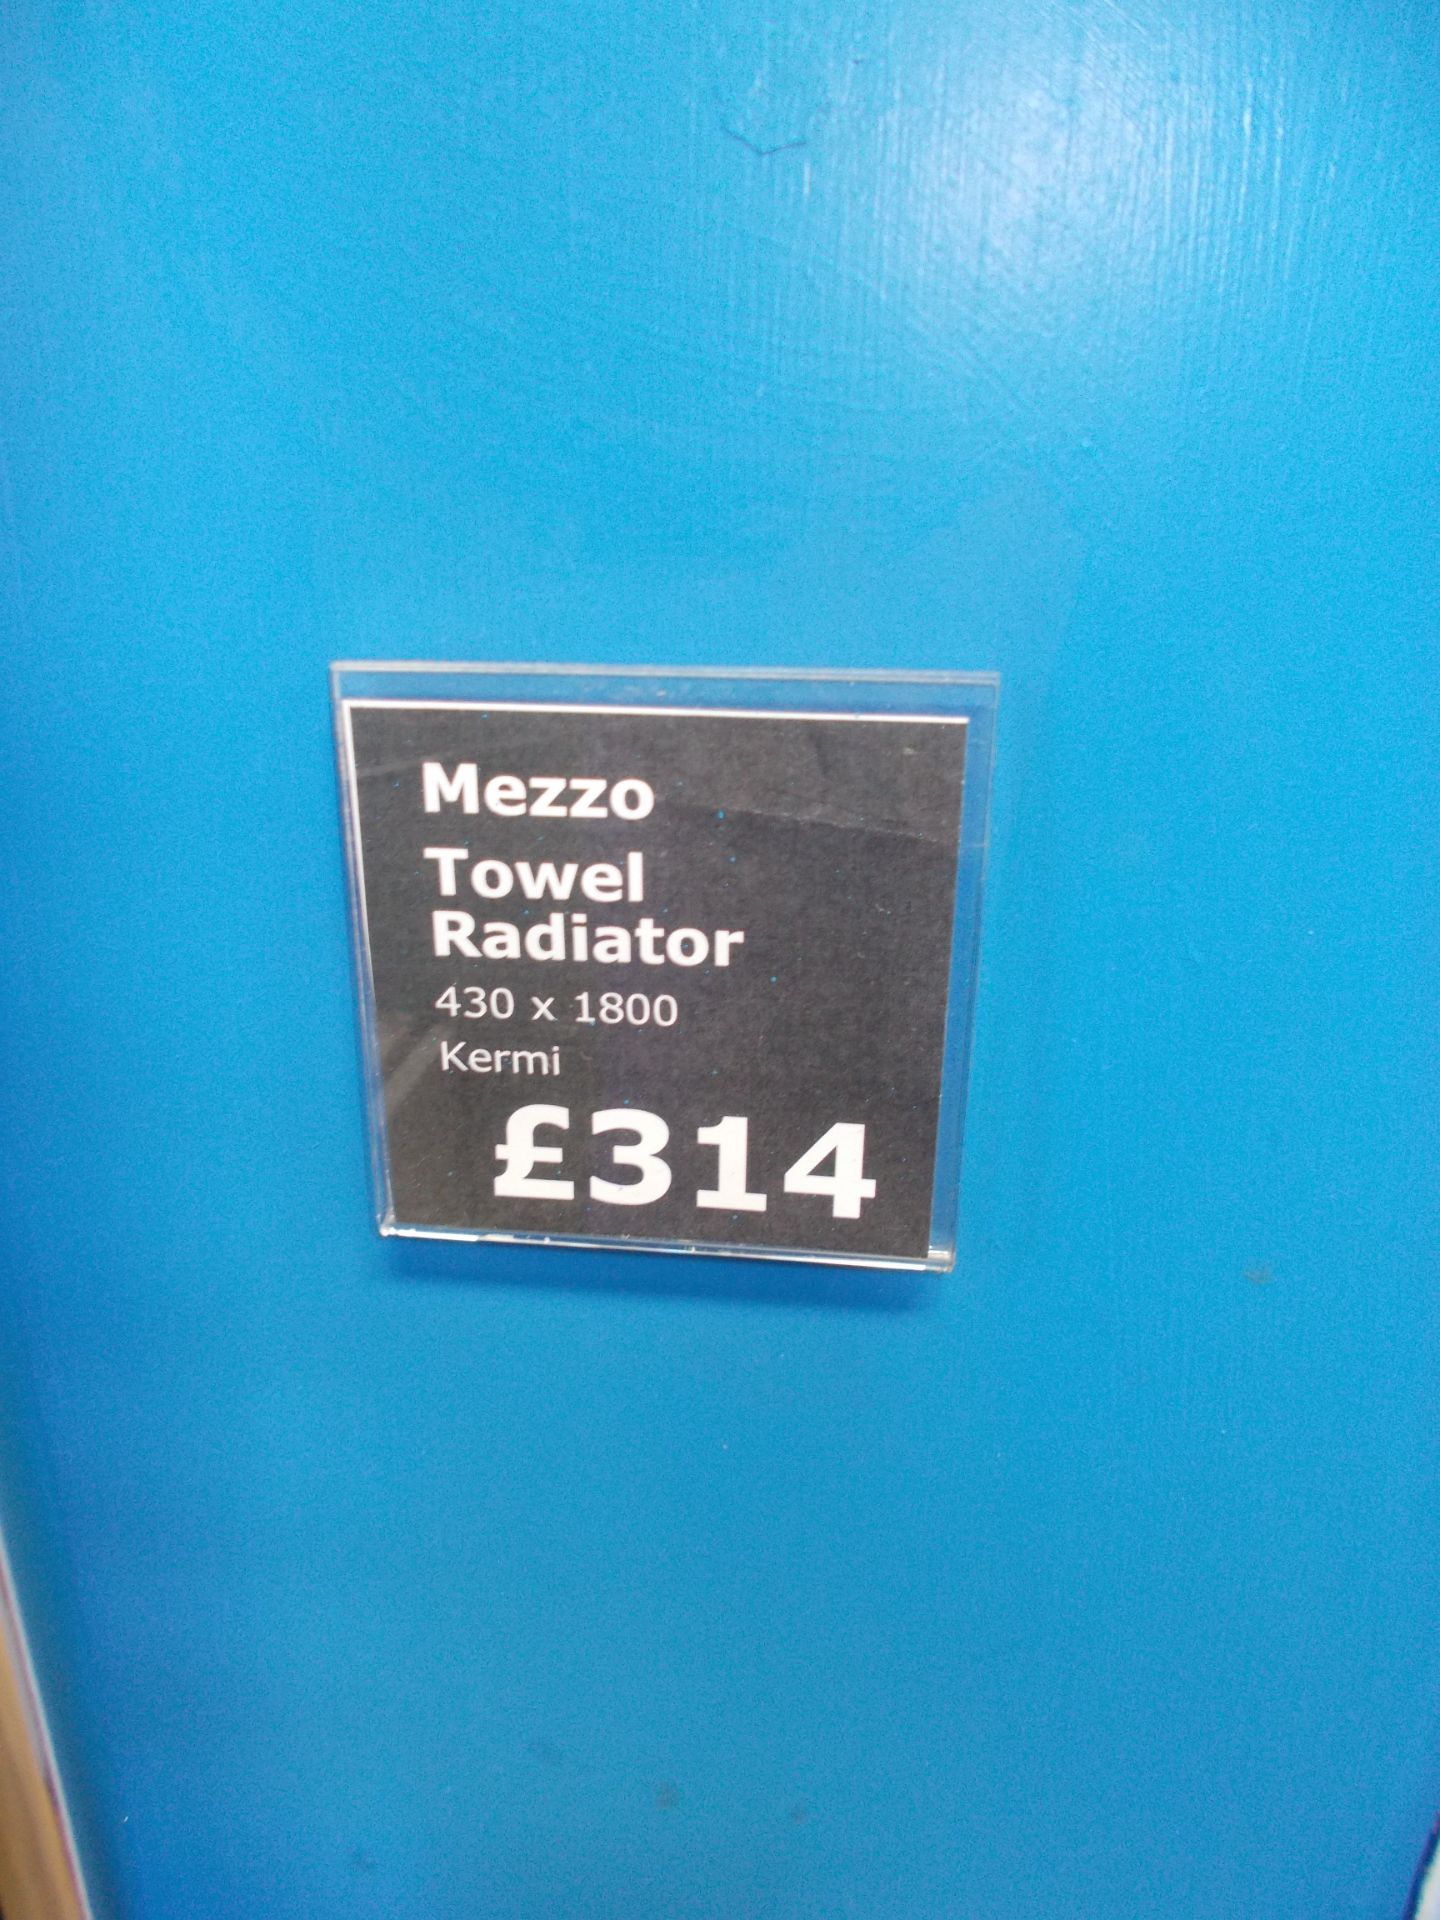 Mezzo 1800 towel radiator. RRP £314 - Image 2 of 2